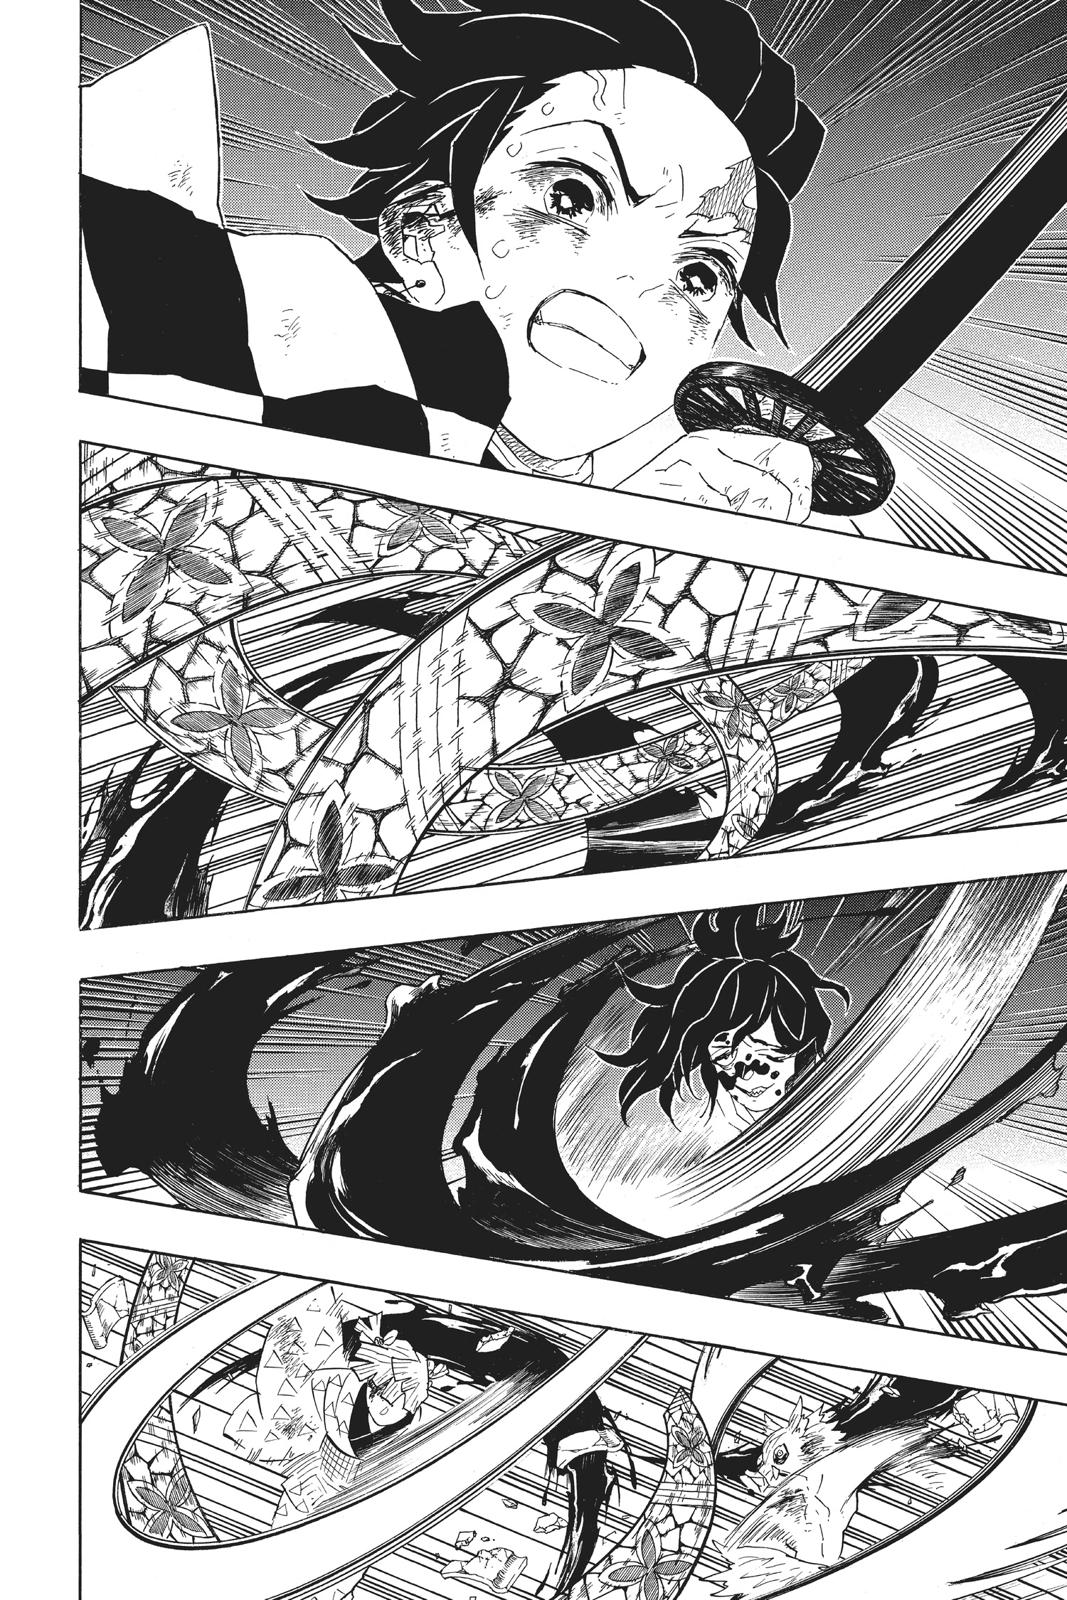 Demon Slayer Manga Manga Chapter - 89 - image 7